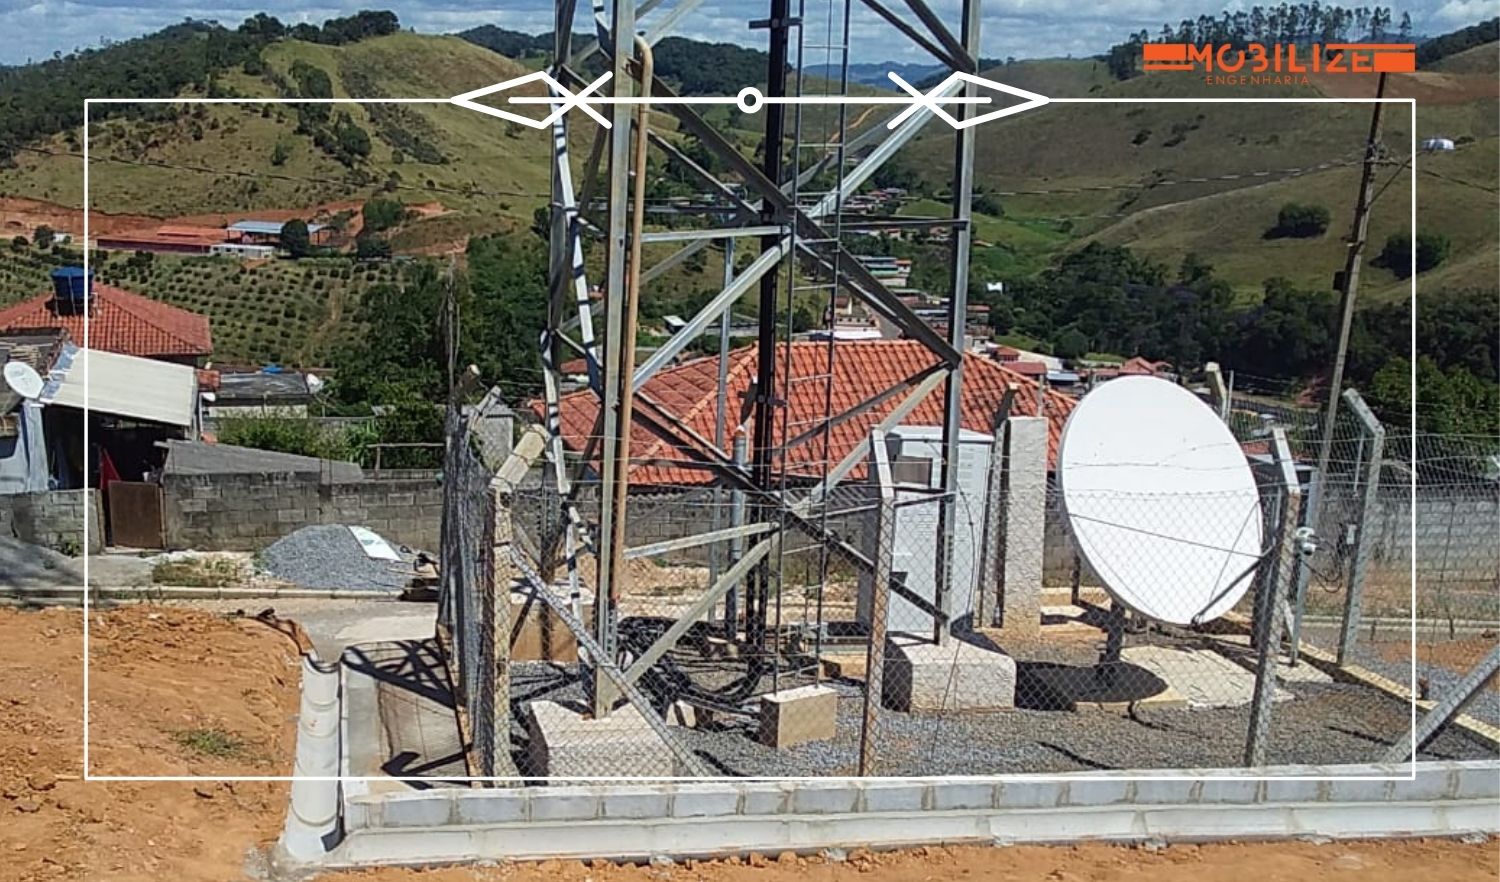 Construção e Manutenção de Sites de Telecom - Mobilize Engenharia